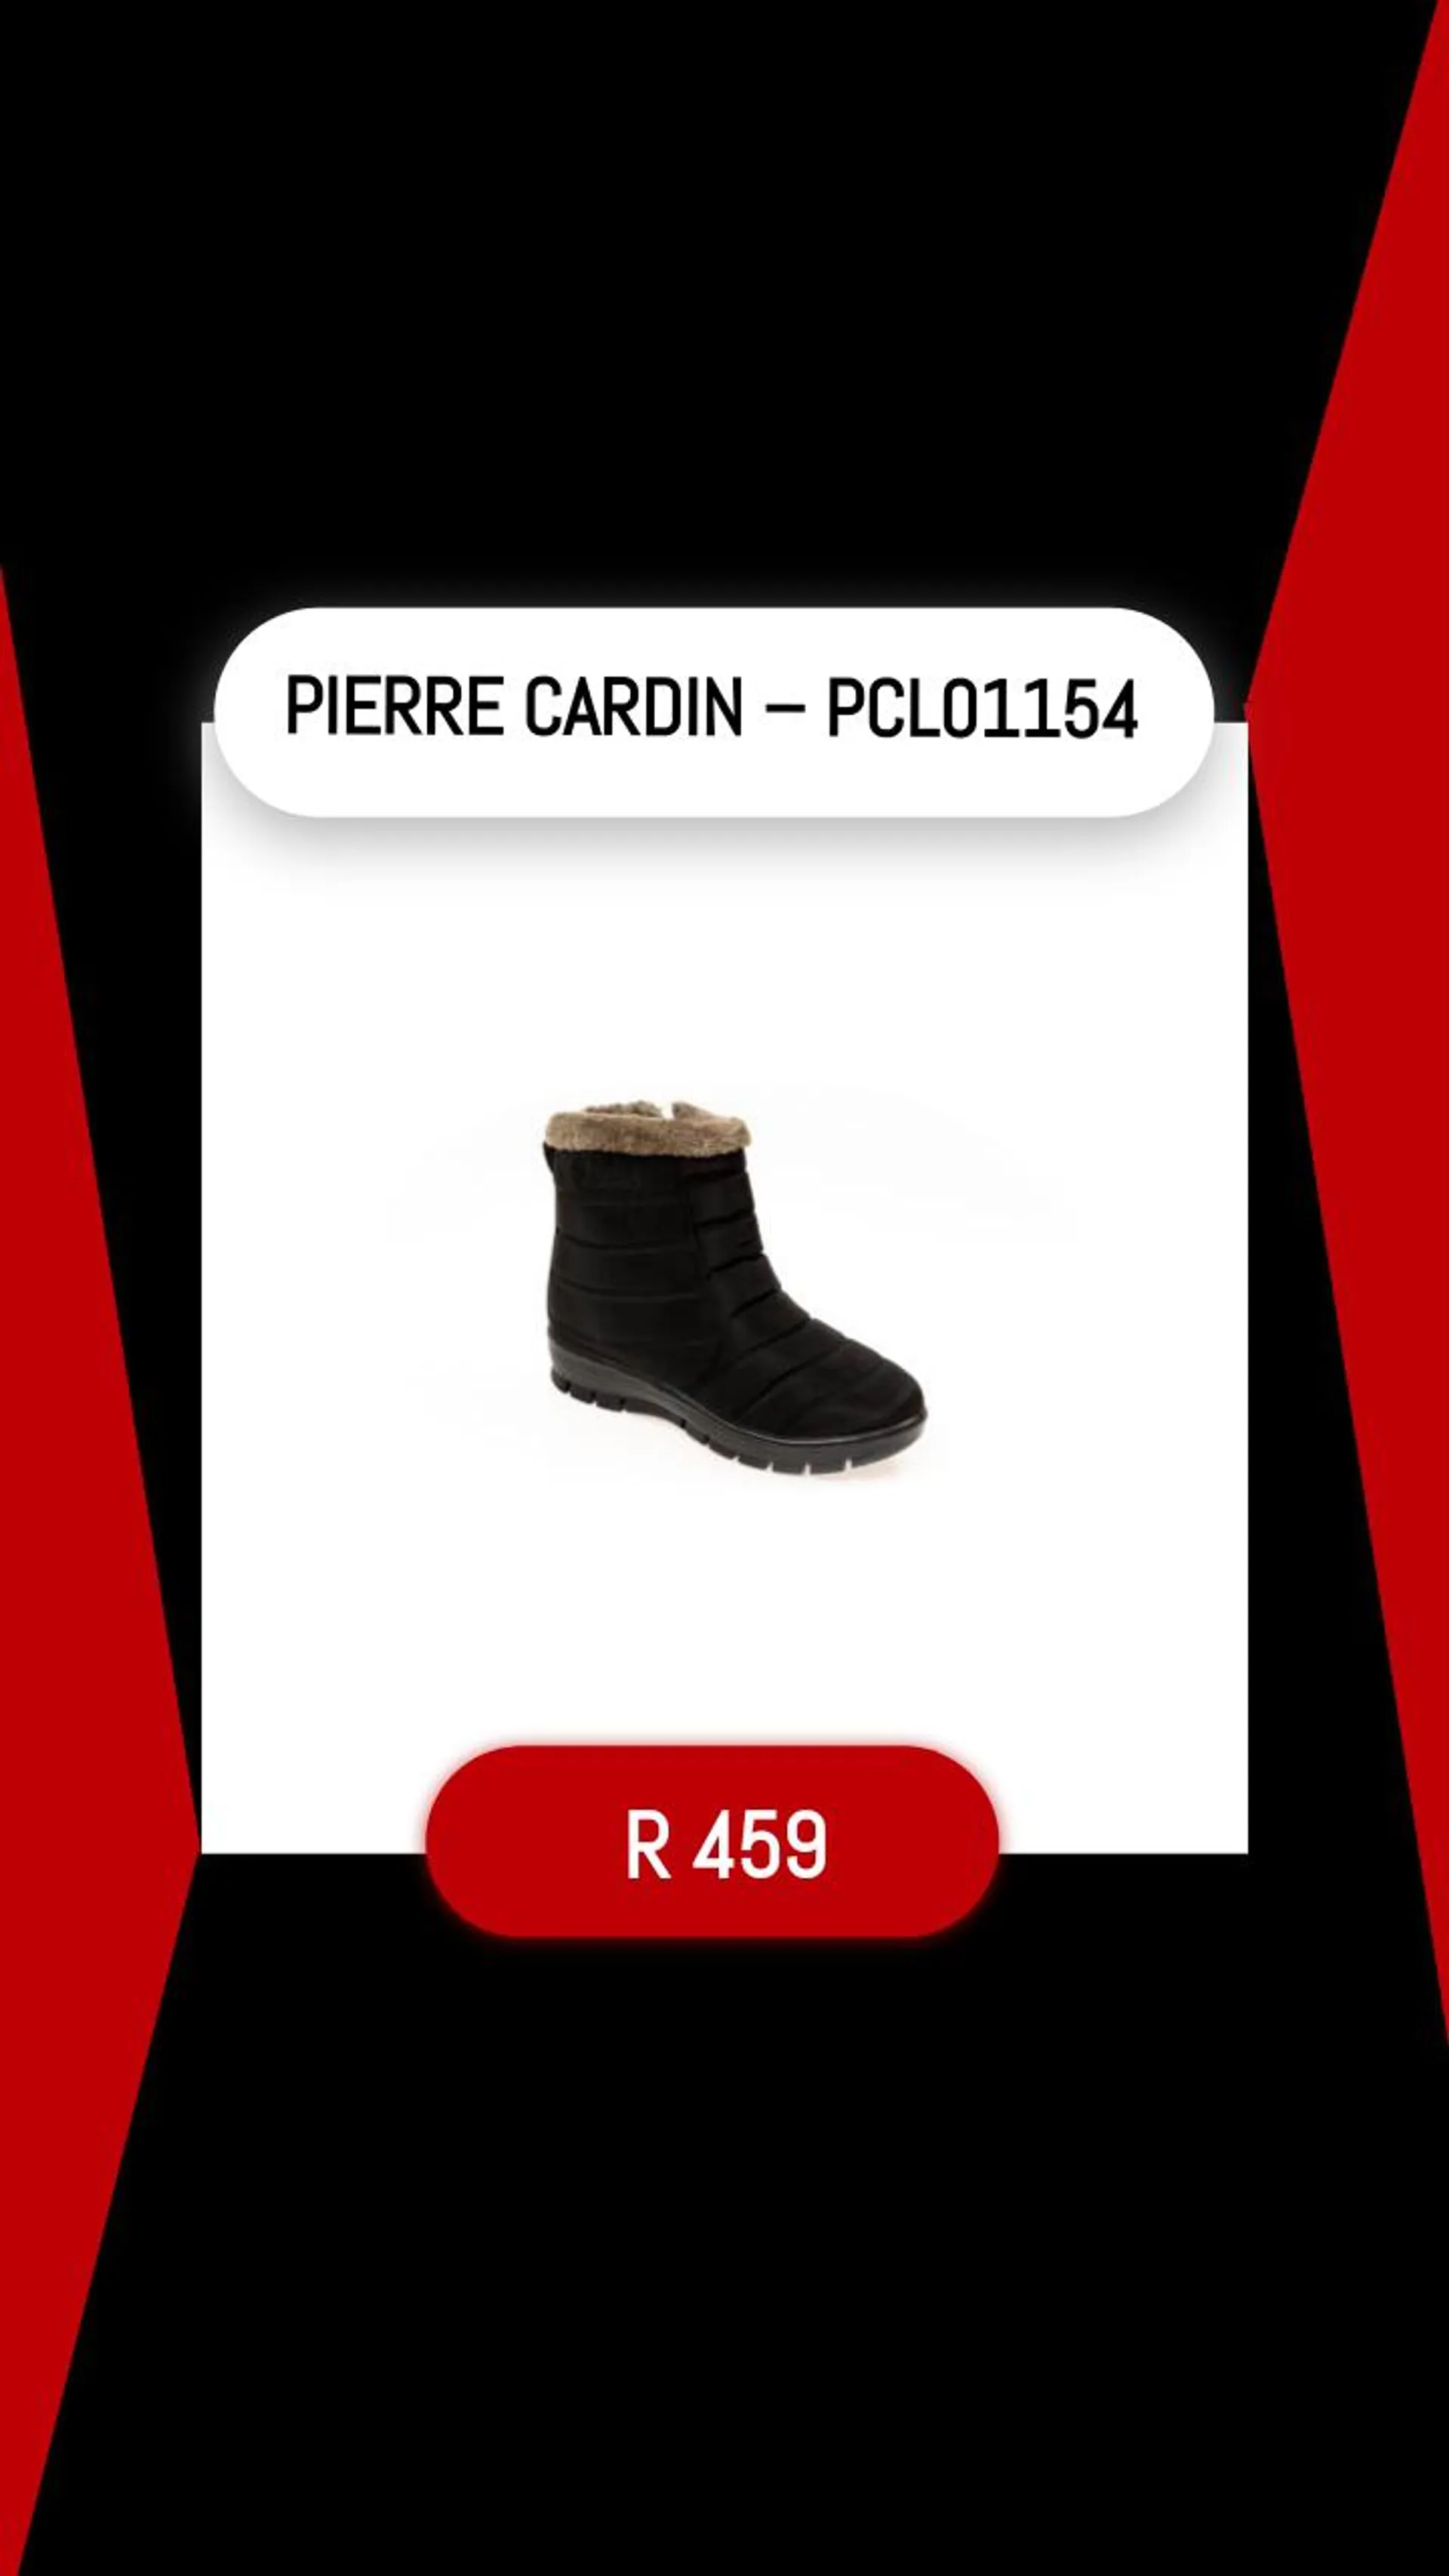 PIERRE CARDIN – PCL01154